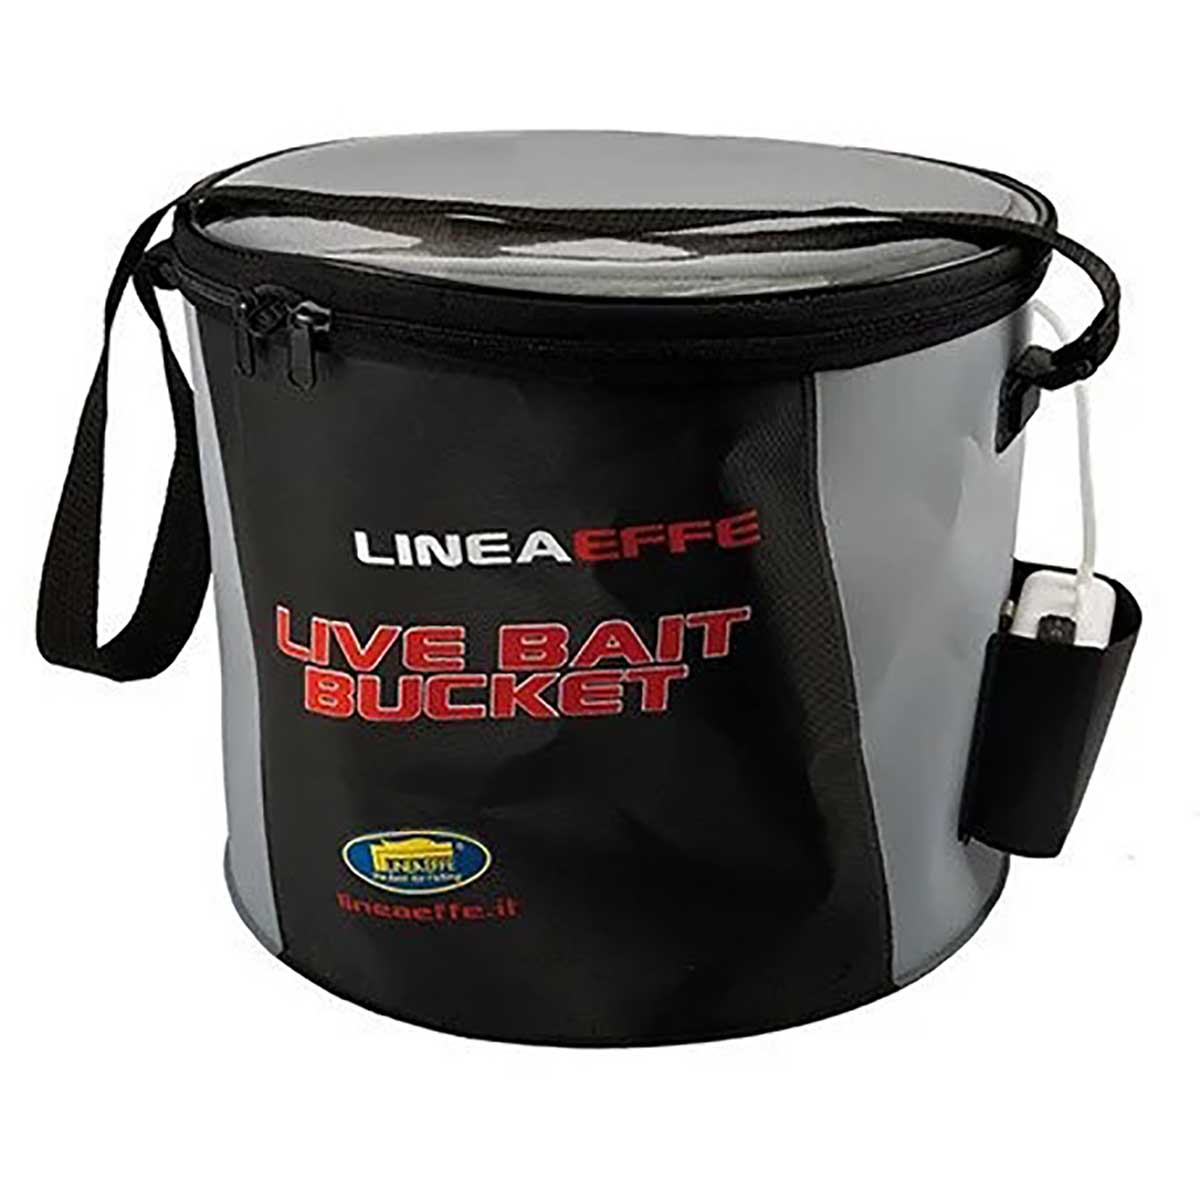 Lineaeffe Live Bait Set,lineaeffe kalitesinde avlamış olduğunuz balıkları koymak için ve canlı tutmak için özel olarak geliştirilmiş bez çanta şeklinde kova